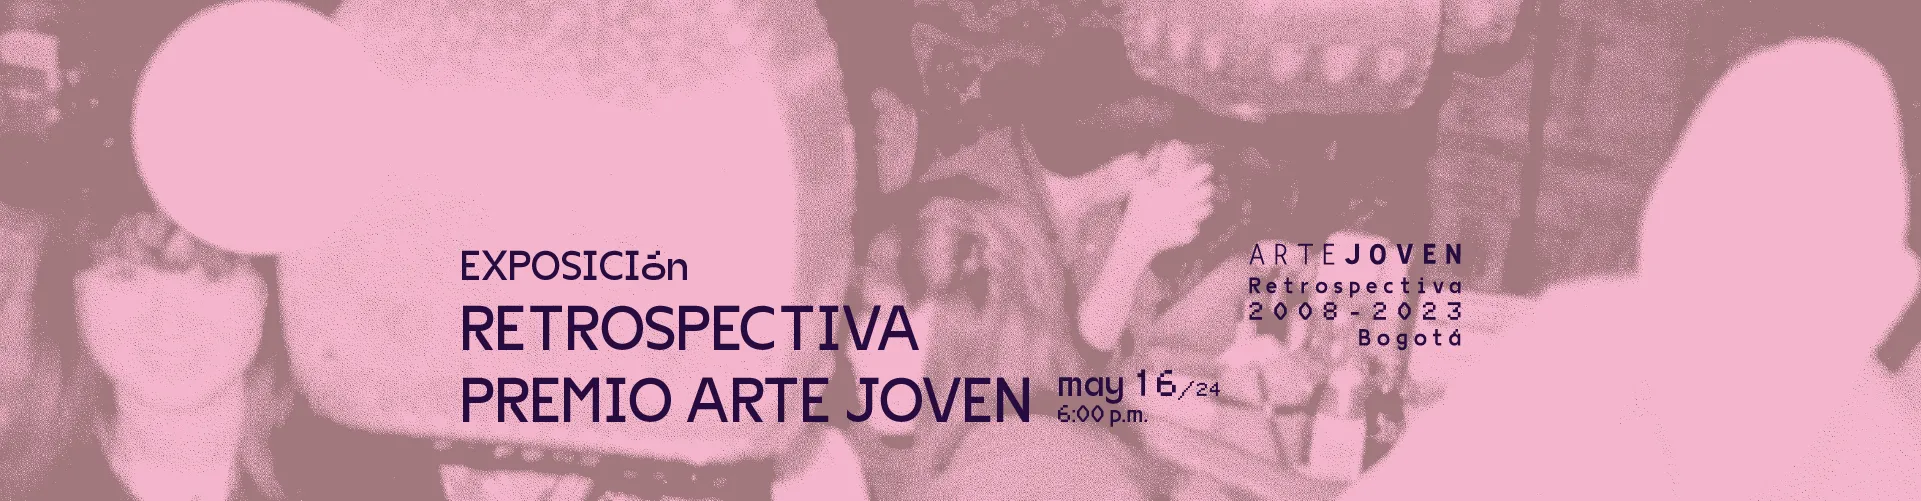 Retrospectiva del Premio Arte Joven 2008-2023 llega a Atrio